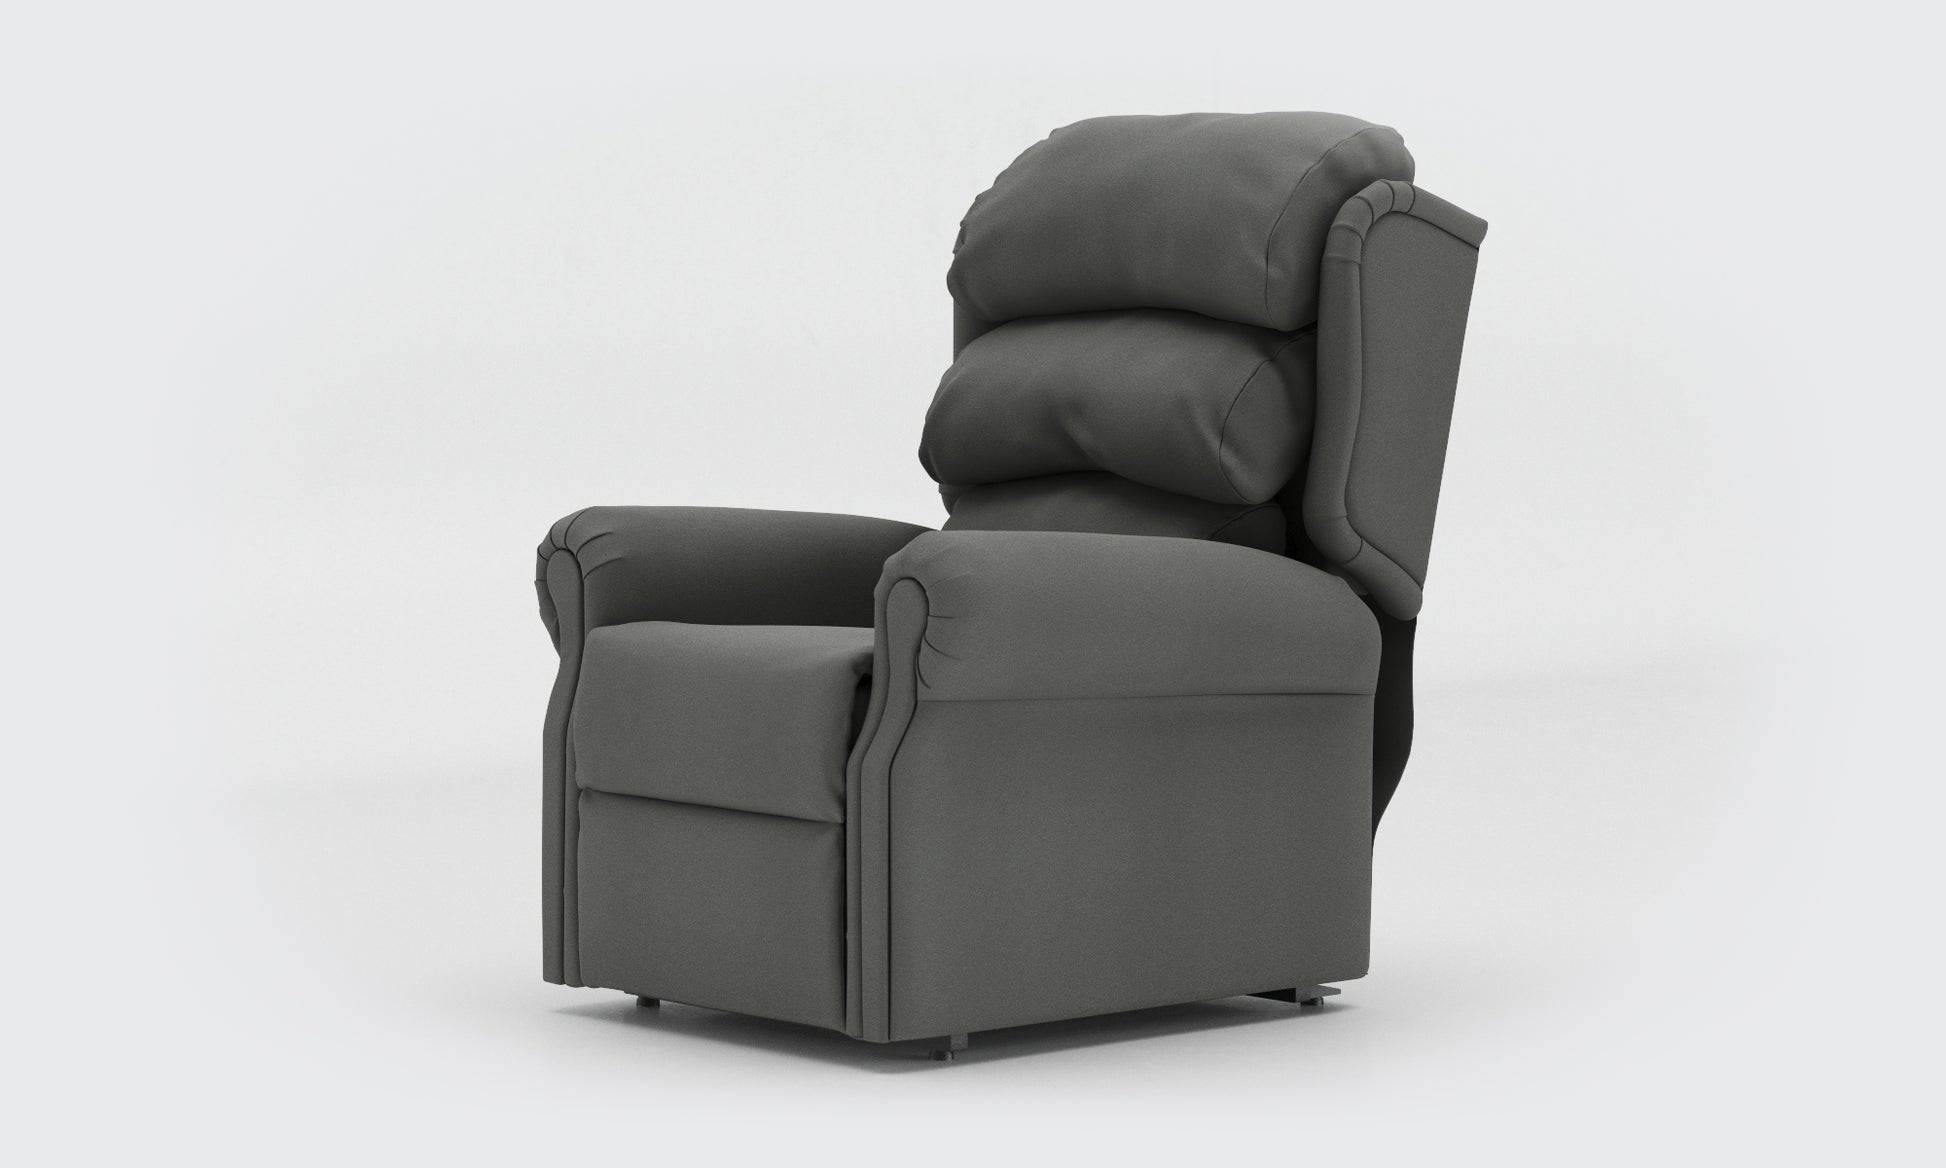 Adara Riser Recliner Chair standard waterfall leather lichtgrau